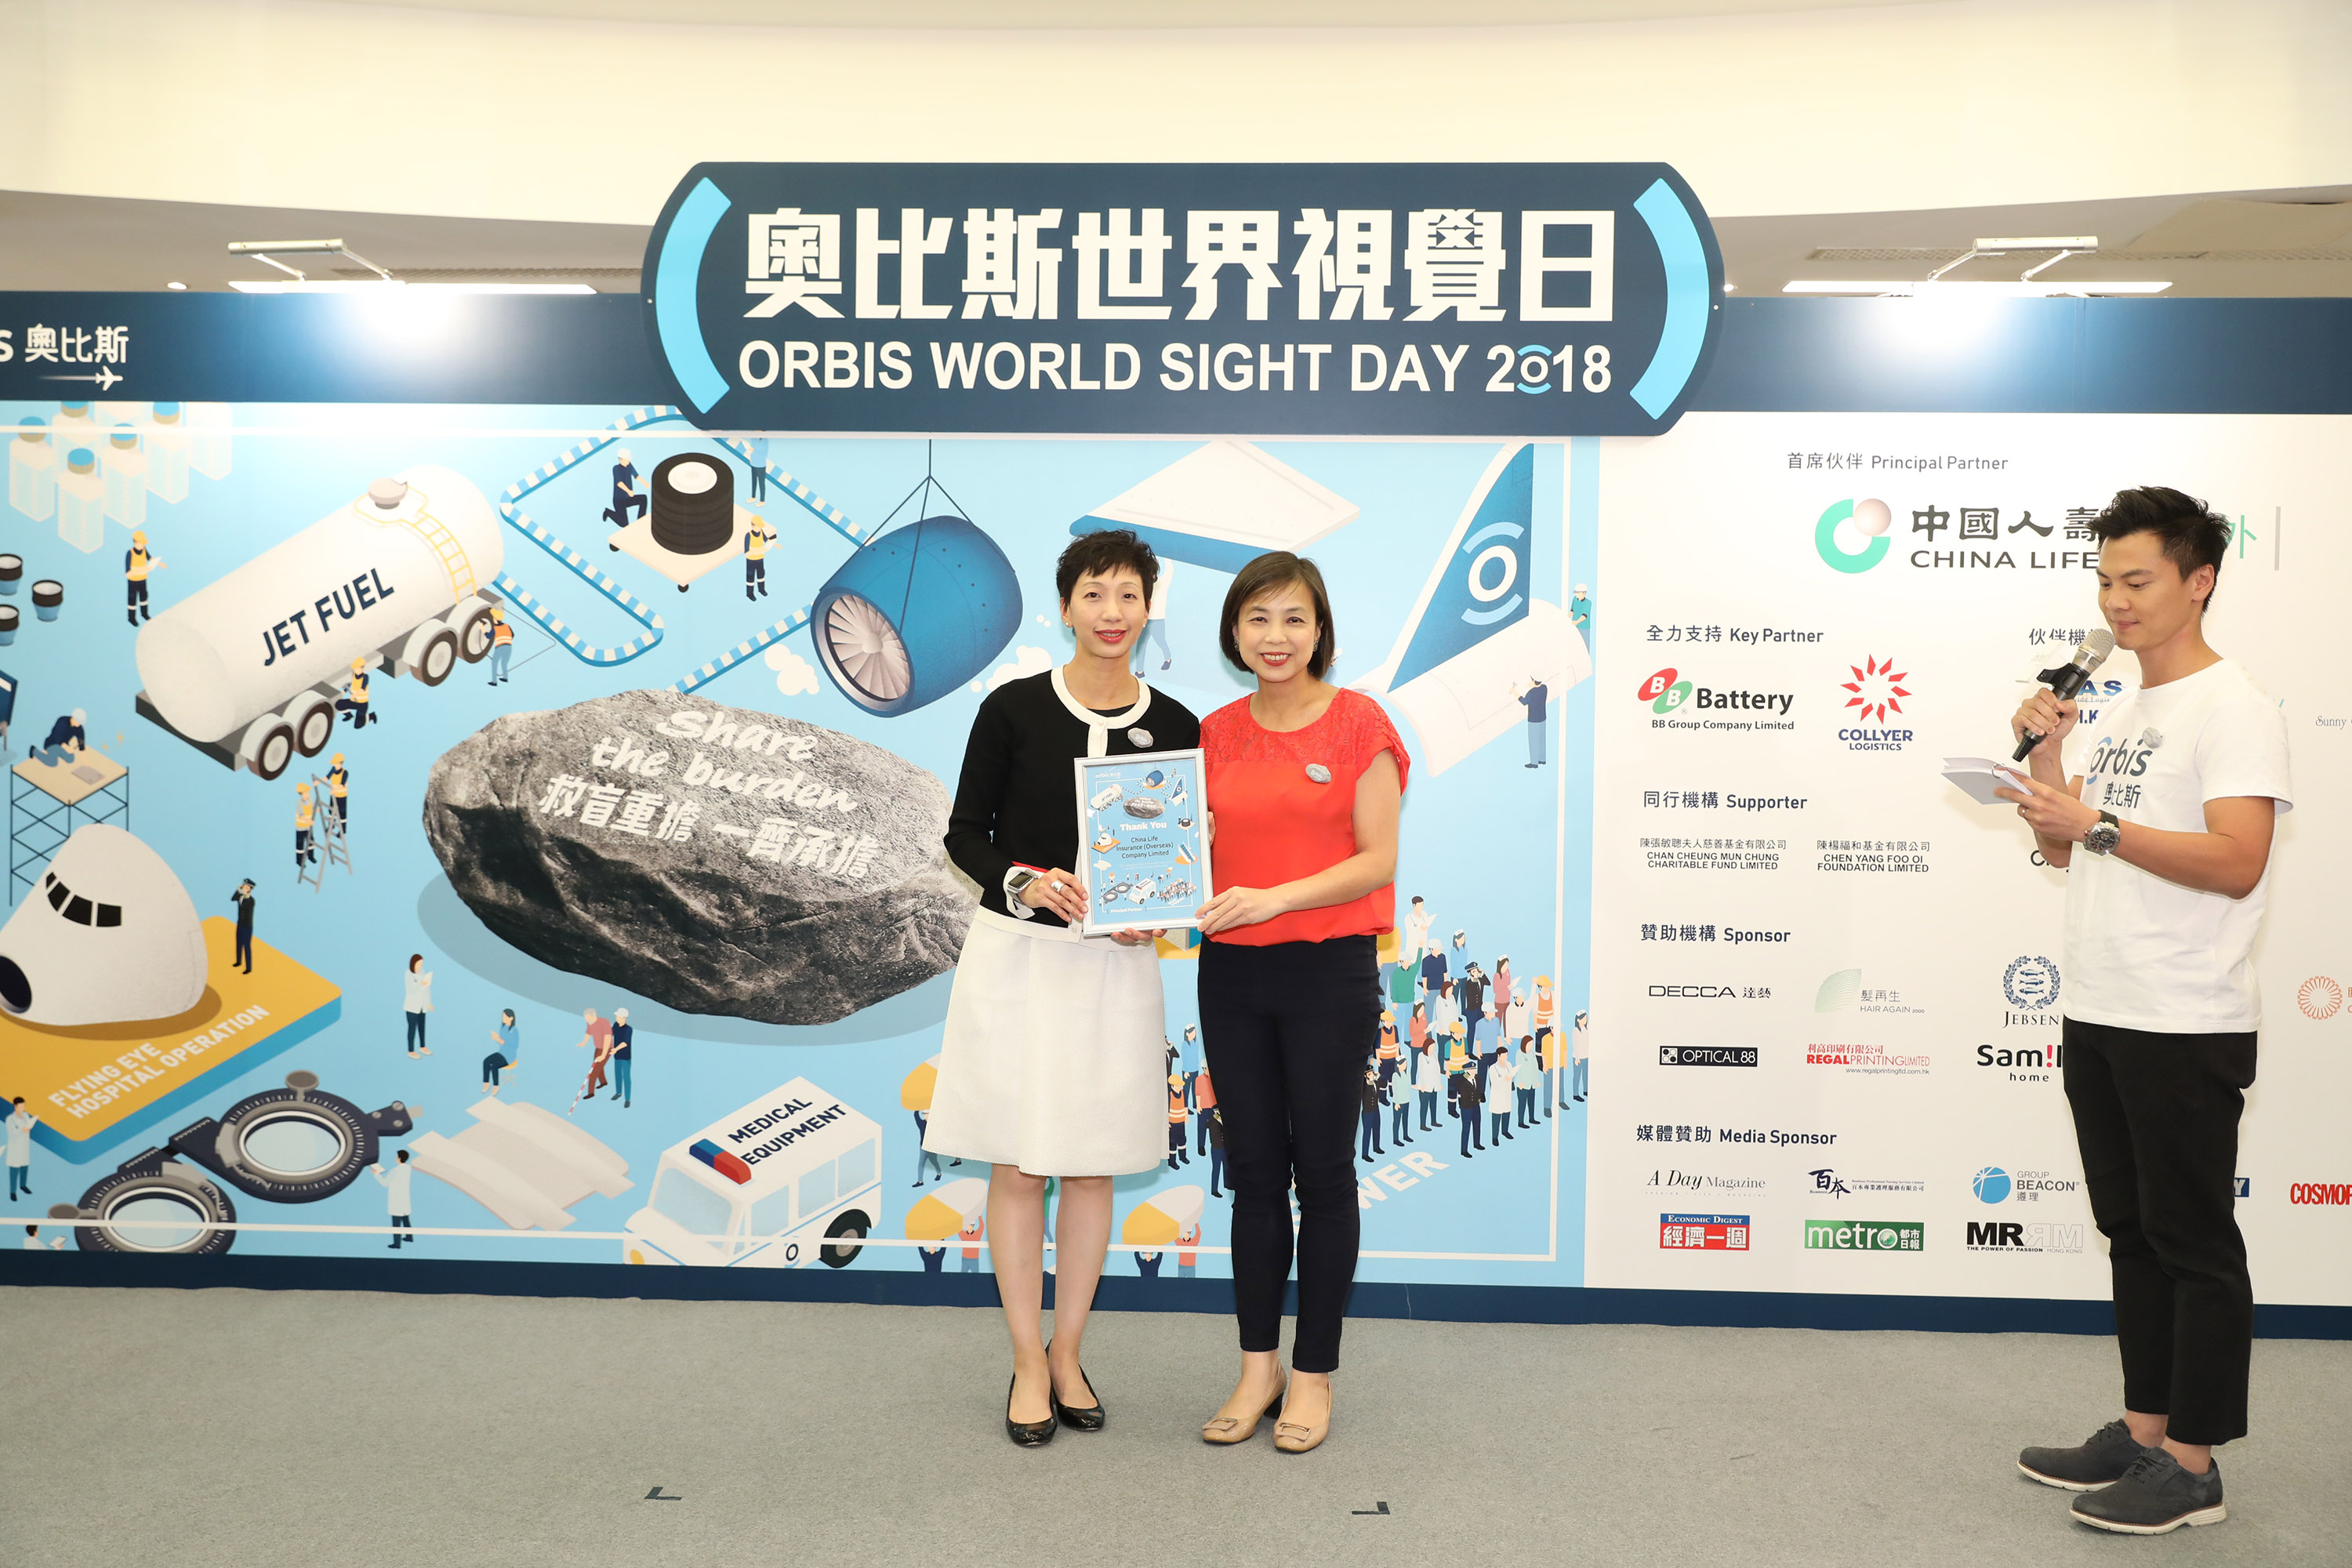 中國人壽（海外）連續兩年成為「奧比斯世界視覺日」首席伙伴， 榮獲「最高籌款金額機構 - 冠軍」獎項，一齊承擔救盲重擔